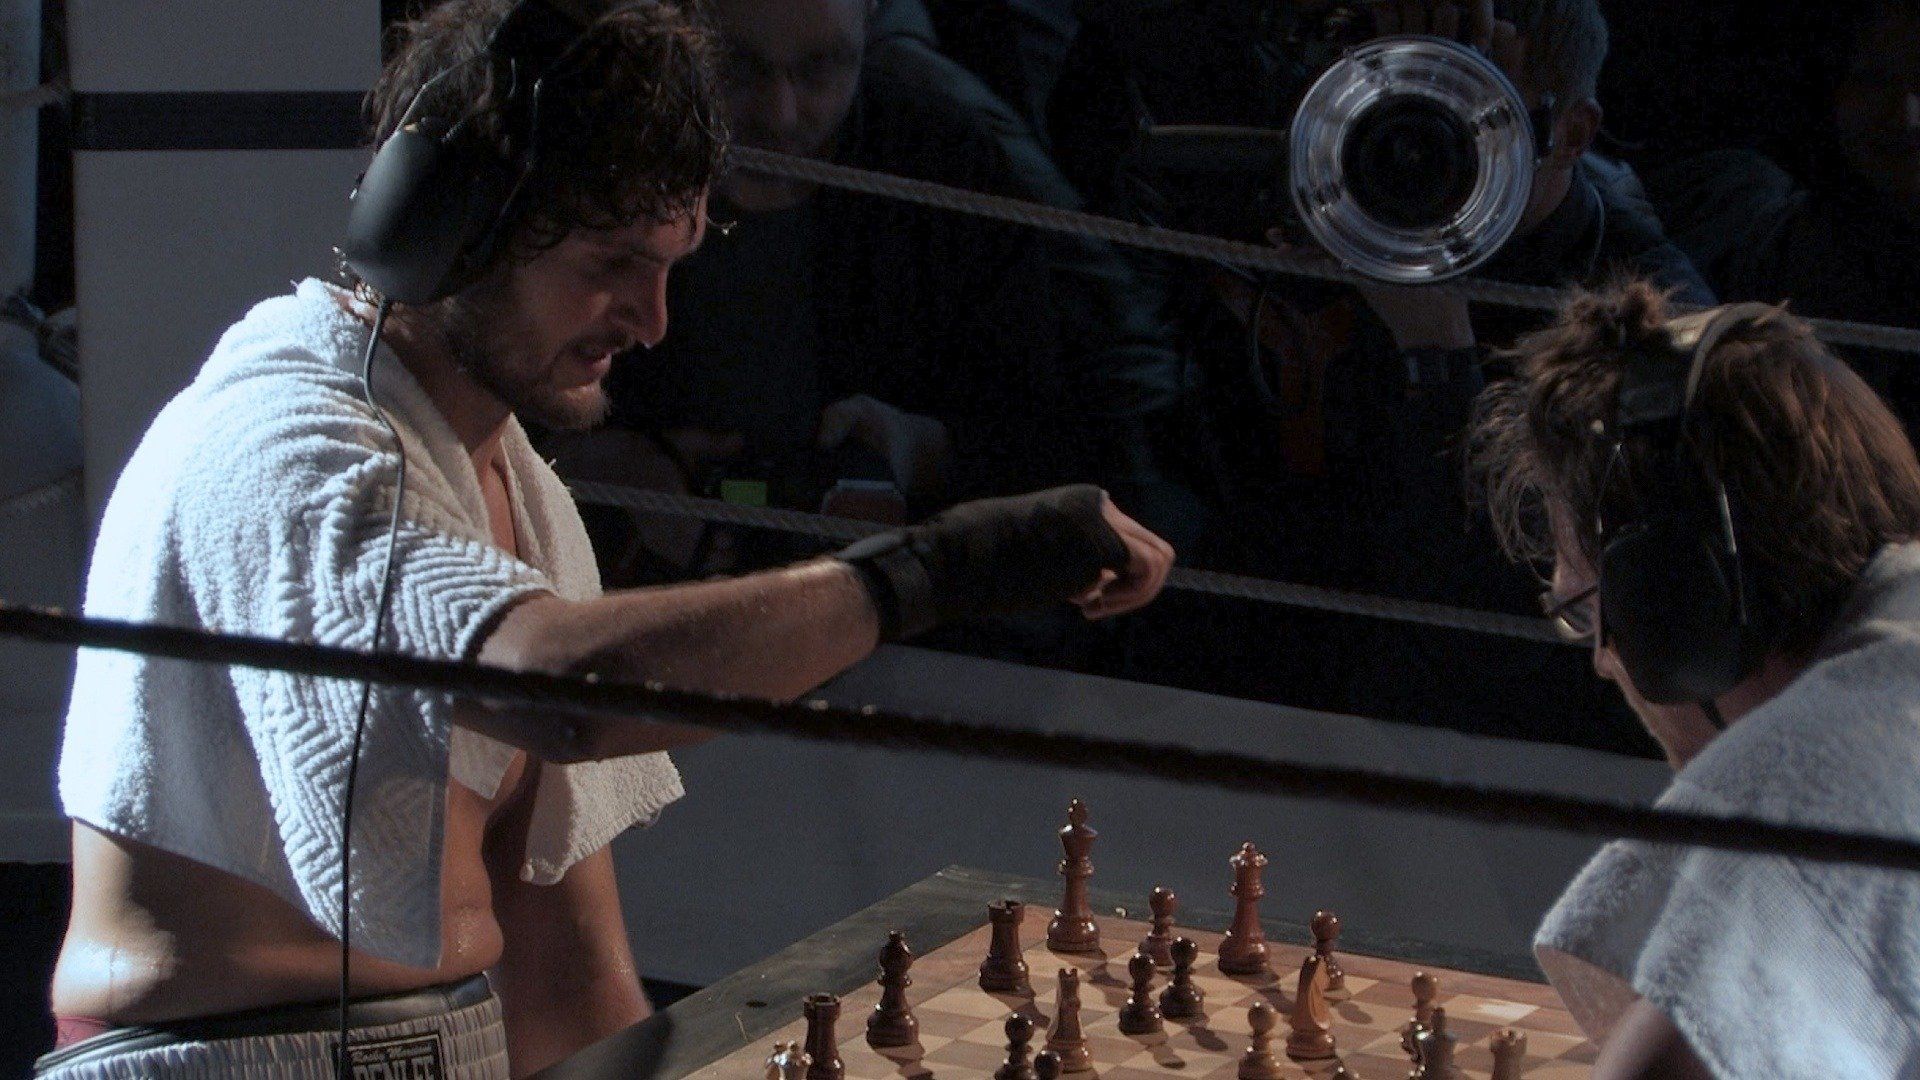 Chessboxing documentary – The King's Discipline